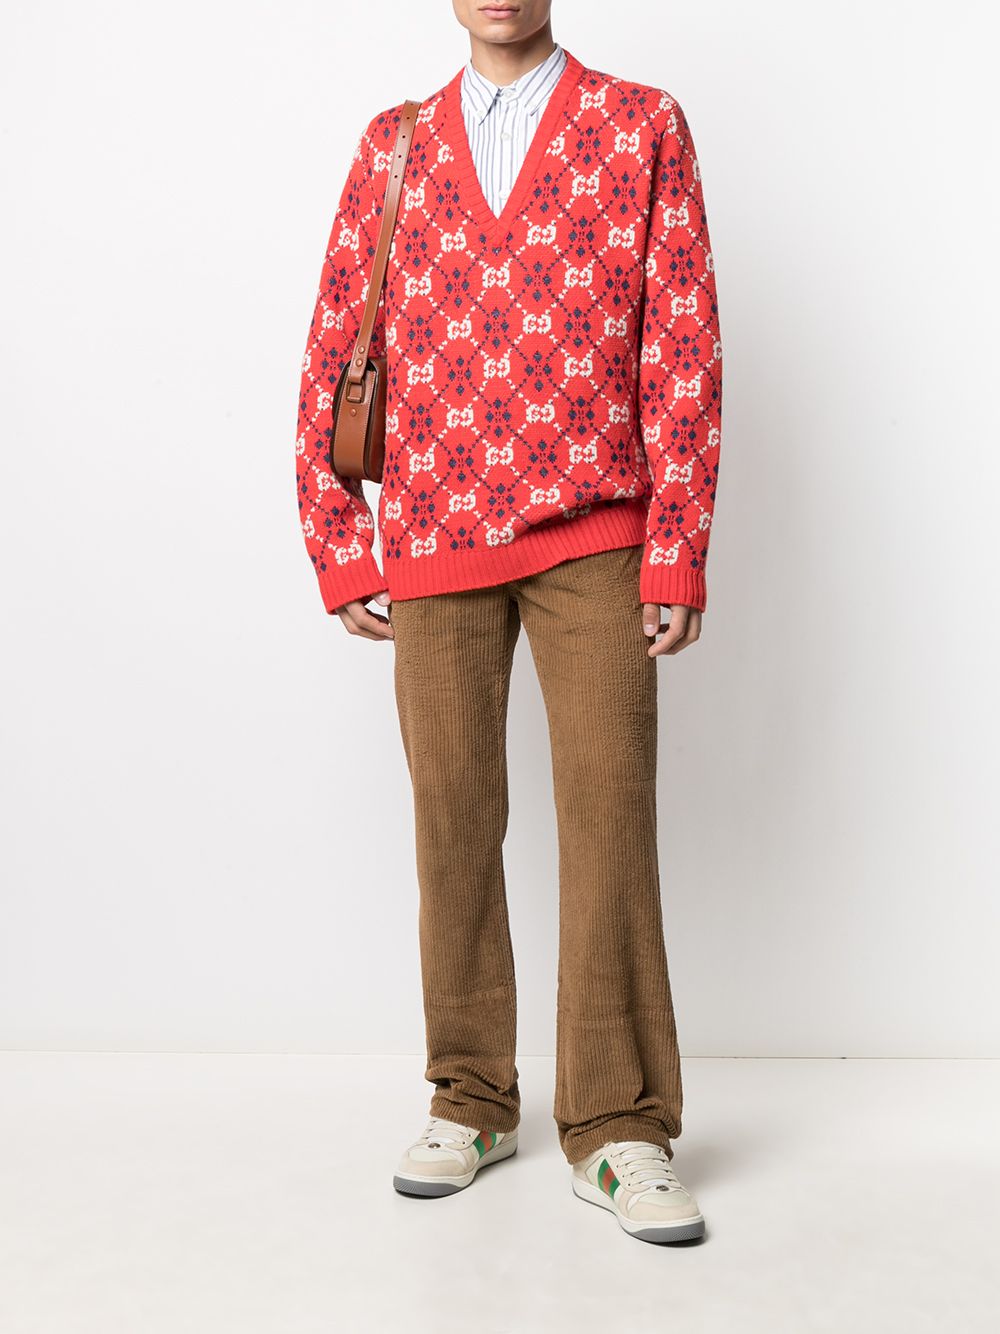 фото Gucci вельветовые брюки широкого кроя